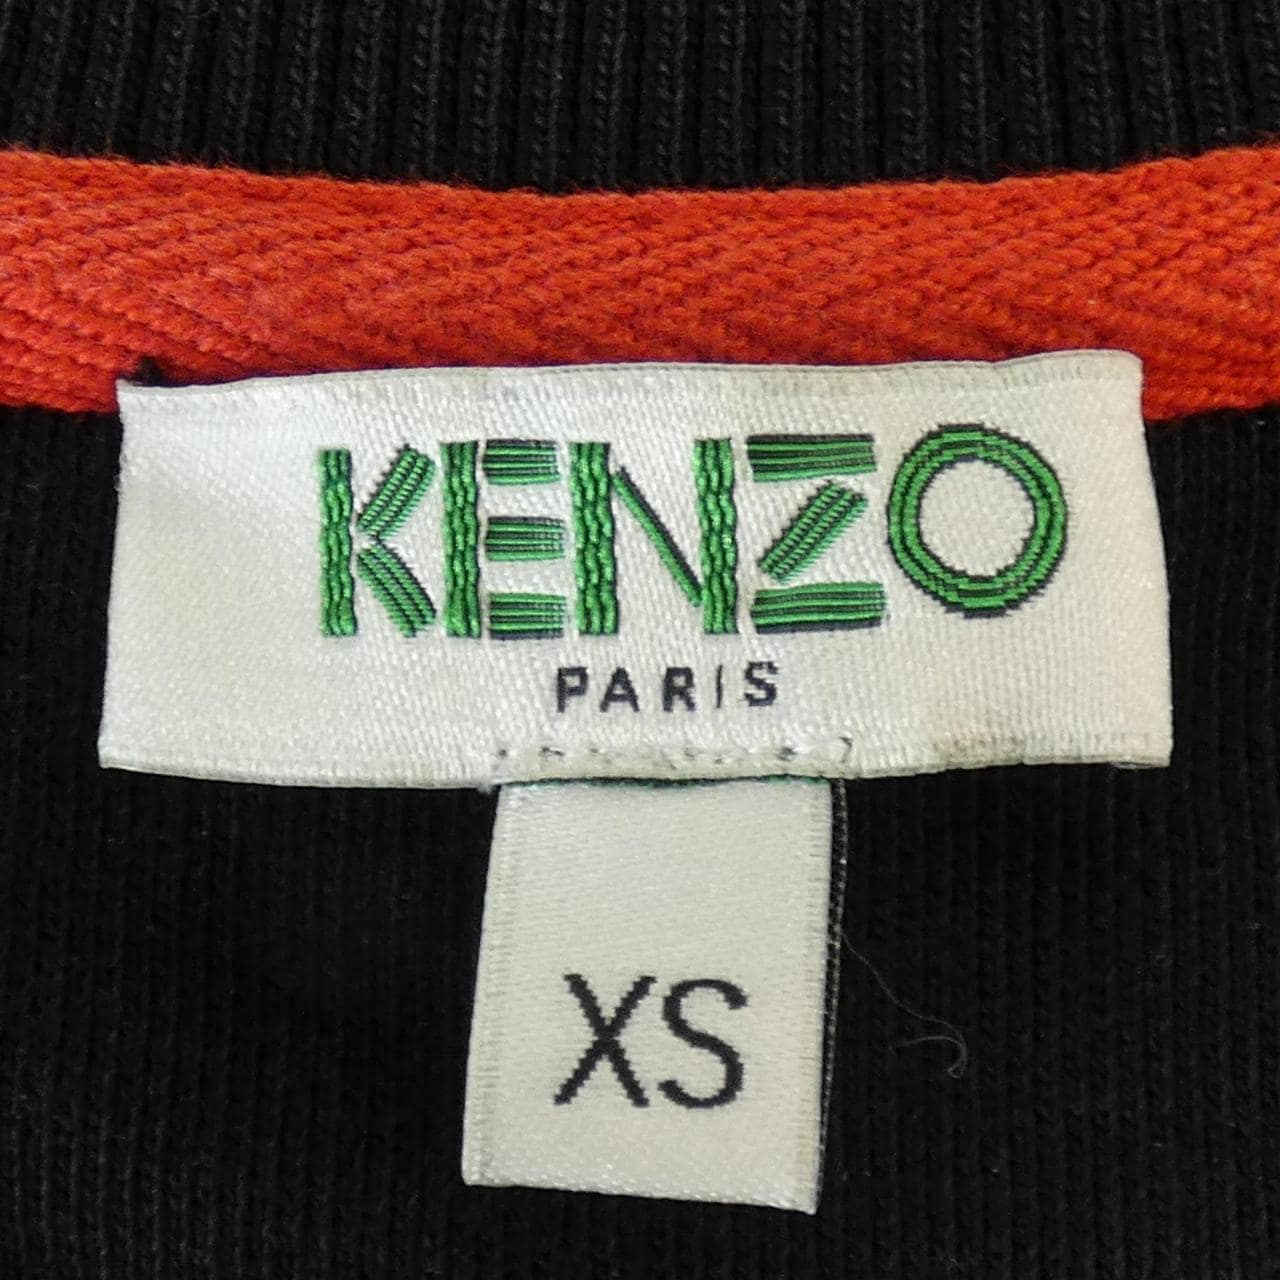 KENZO Sweatshirts